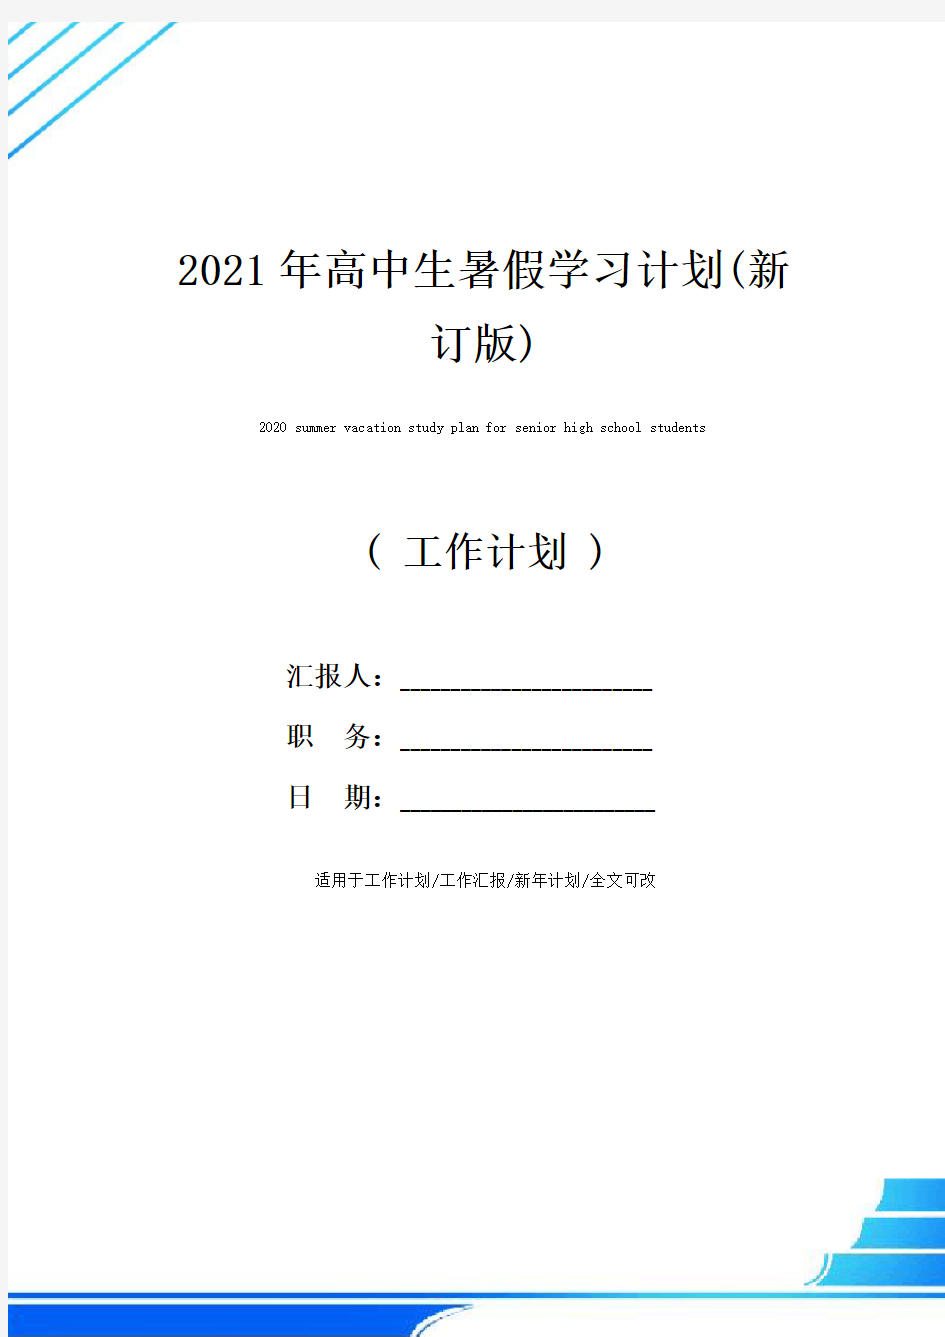 2021年高中生暑假学习计划(新订版)